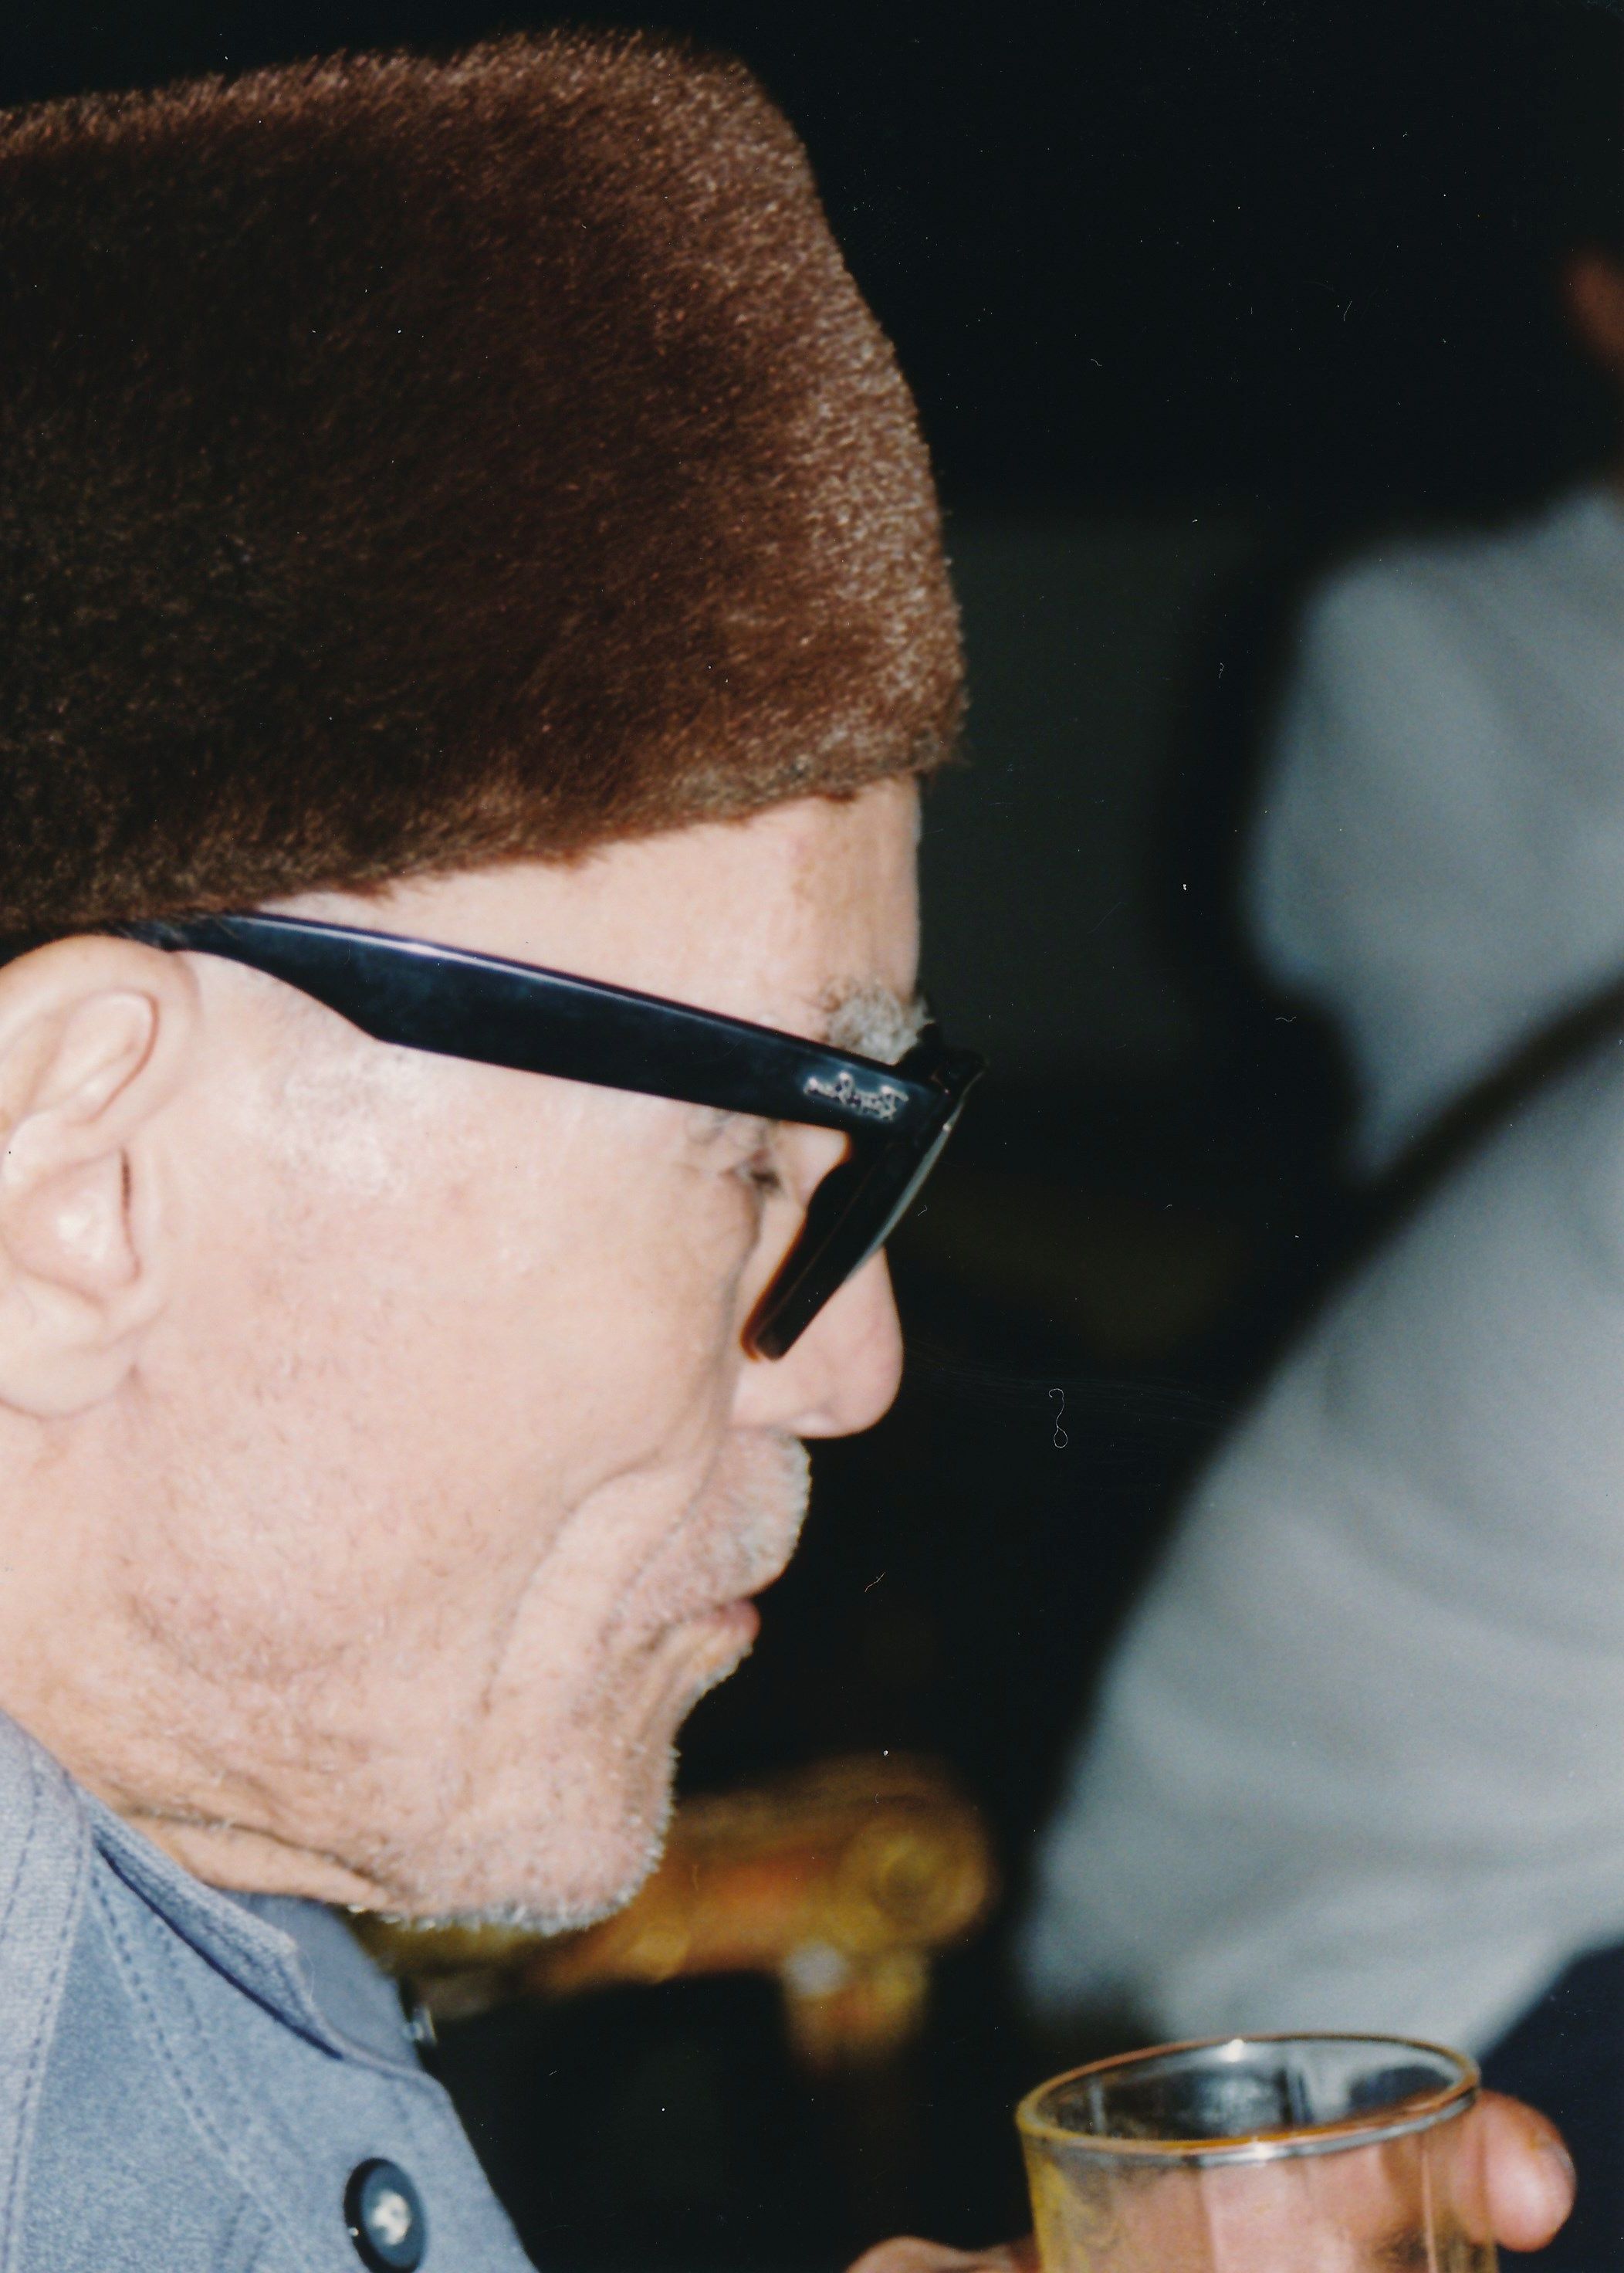 الشيخ إمام خلال لقاء شخصي عام 1994 في القاهرة - مصر. Foto: Martina Sabra